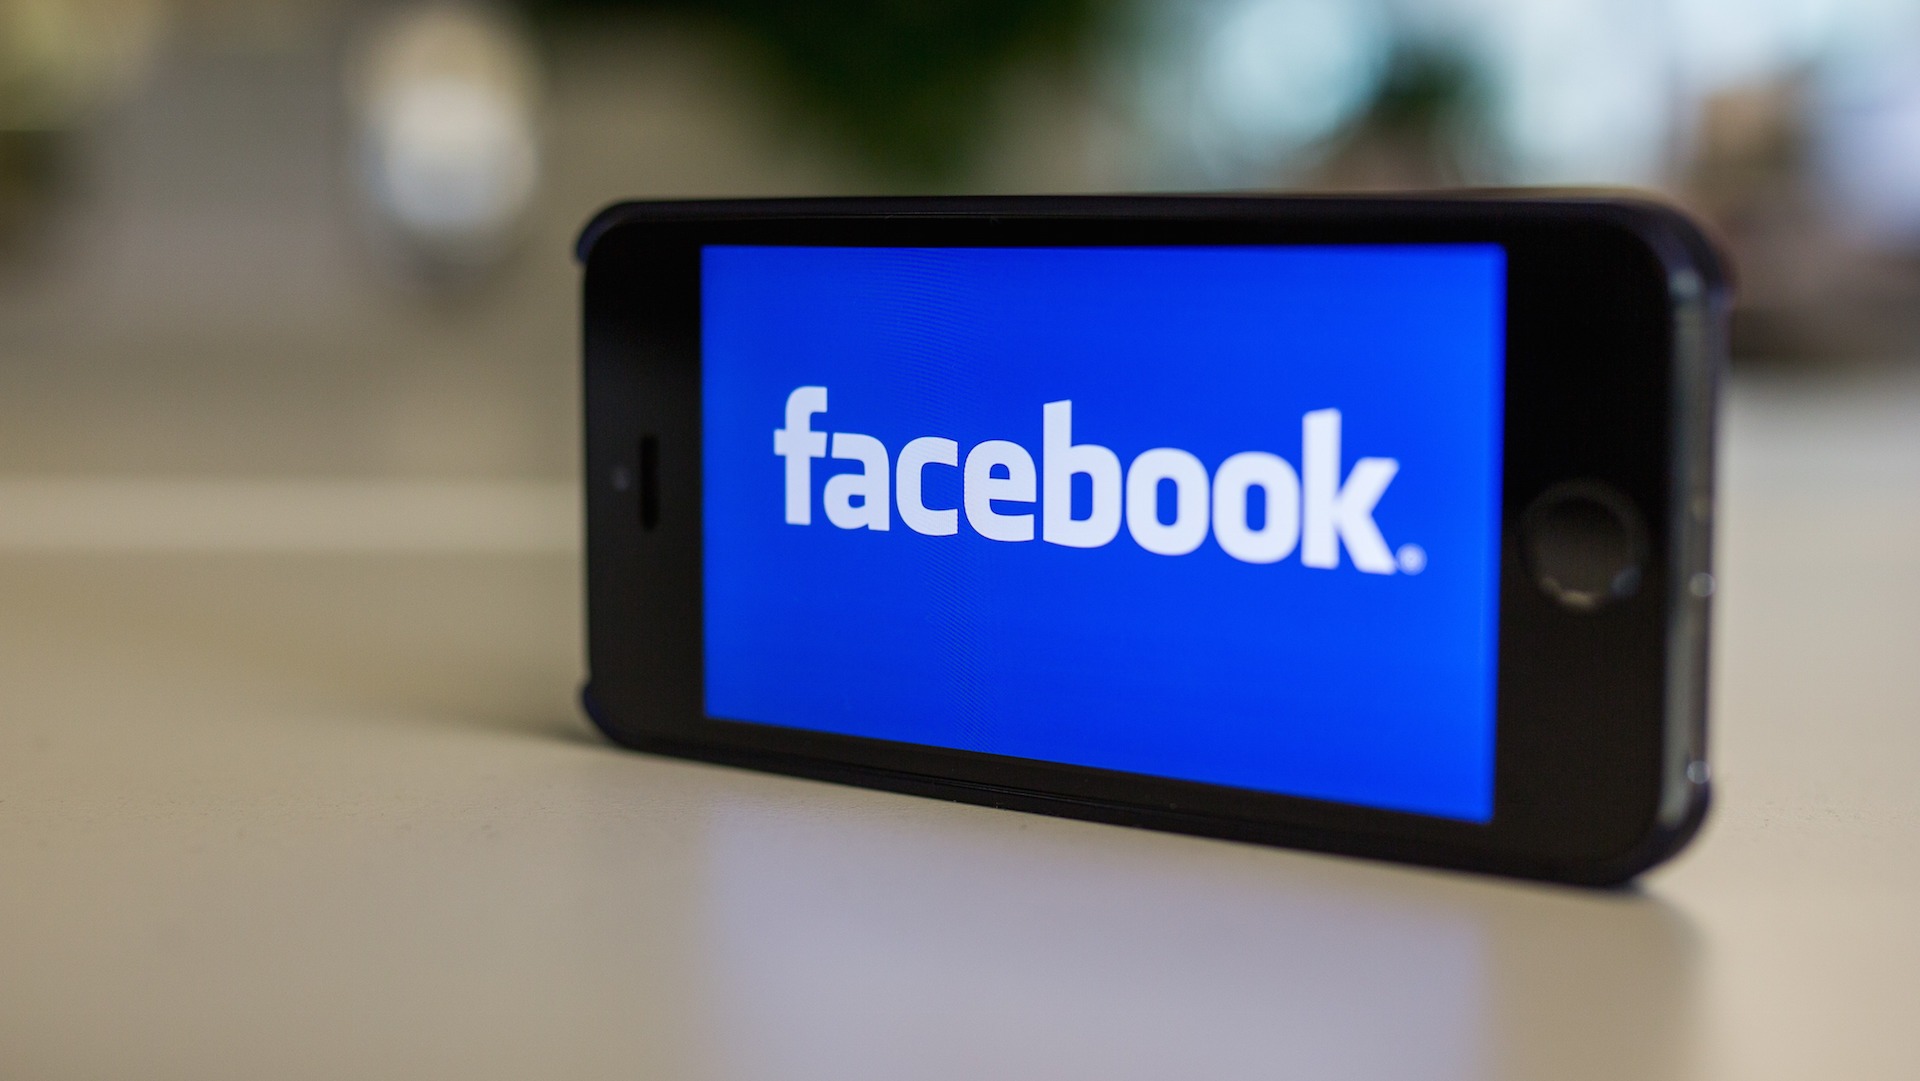 تطبيق يخبرك بمن قام بإلغاء صداقتك على فيسبوك Facebook